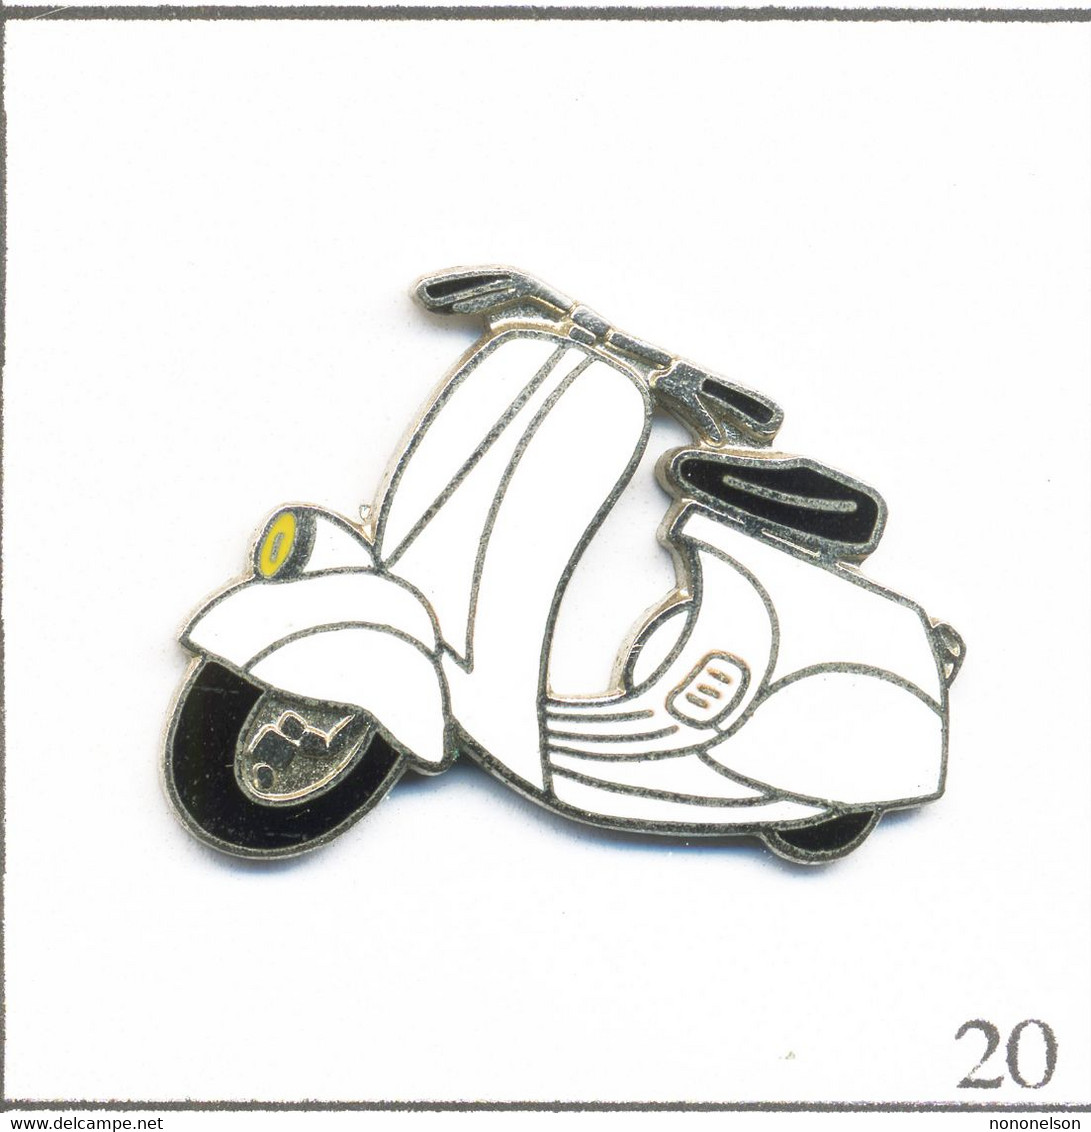 Pin's Transport - Moto - Scooter Piaggio Blanc. Non Est. (Démons Et Merveilles). EGF. T800J-20 - Opel